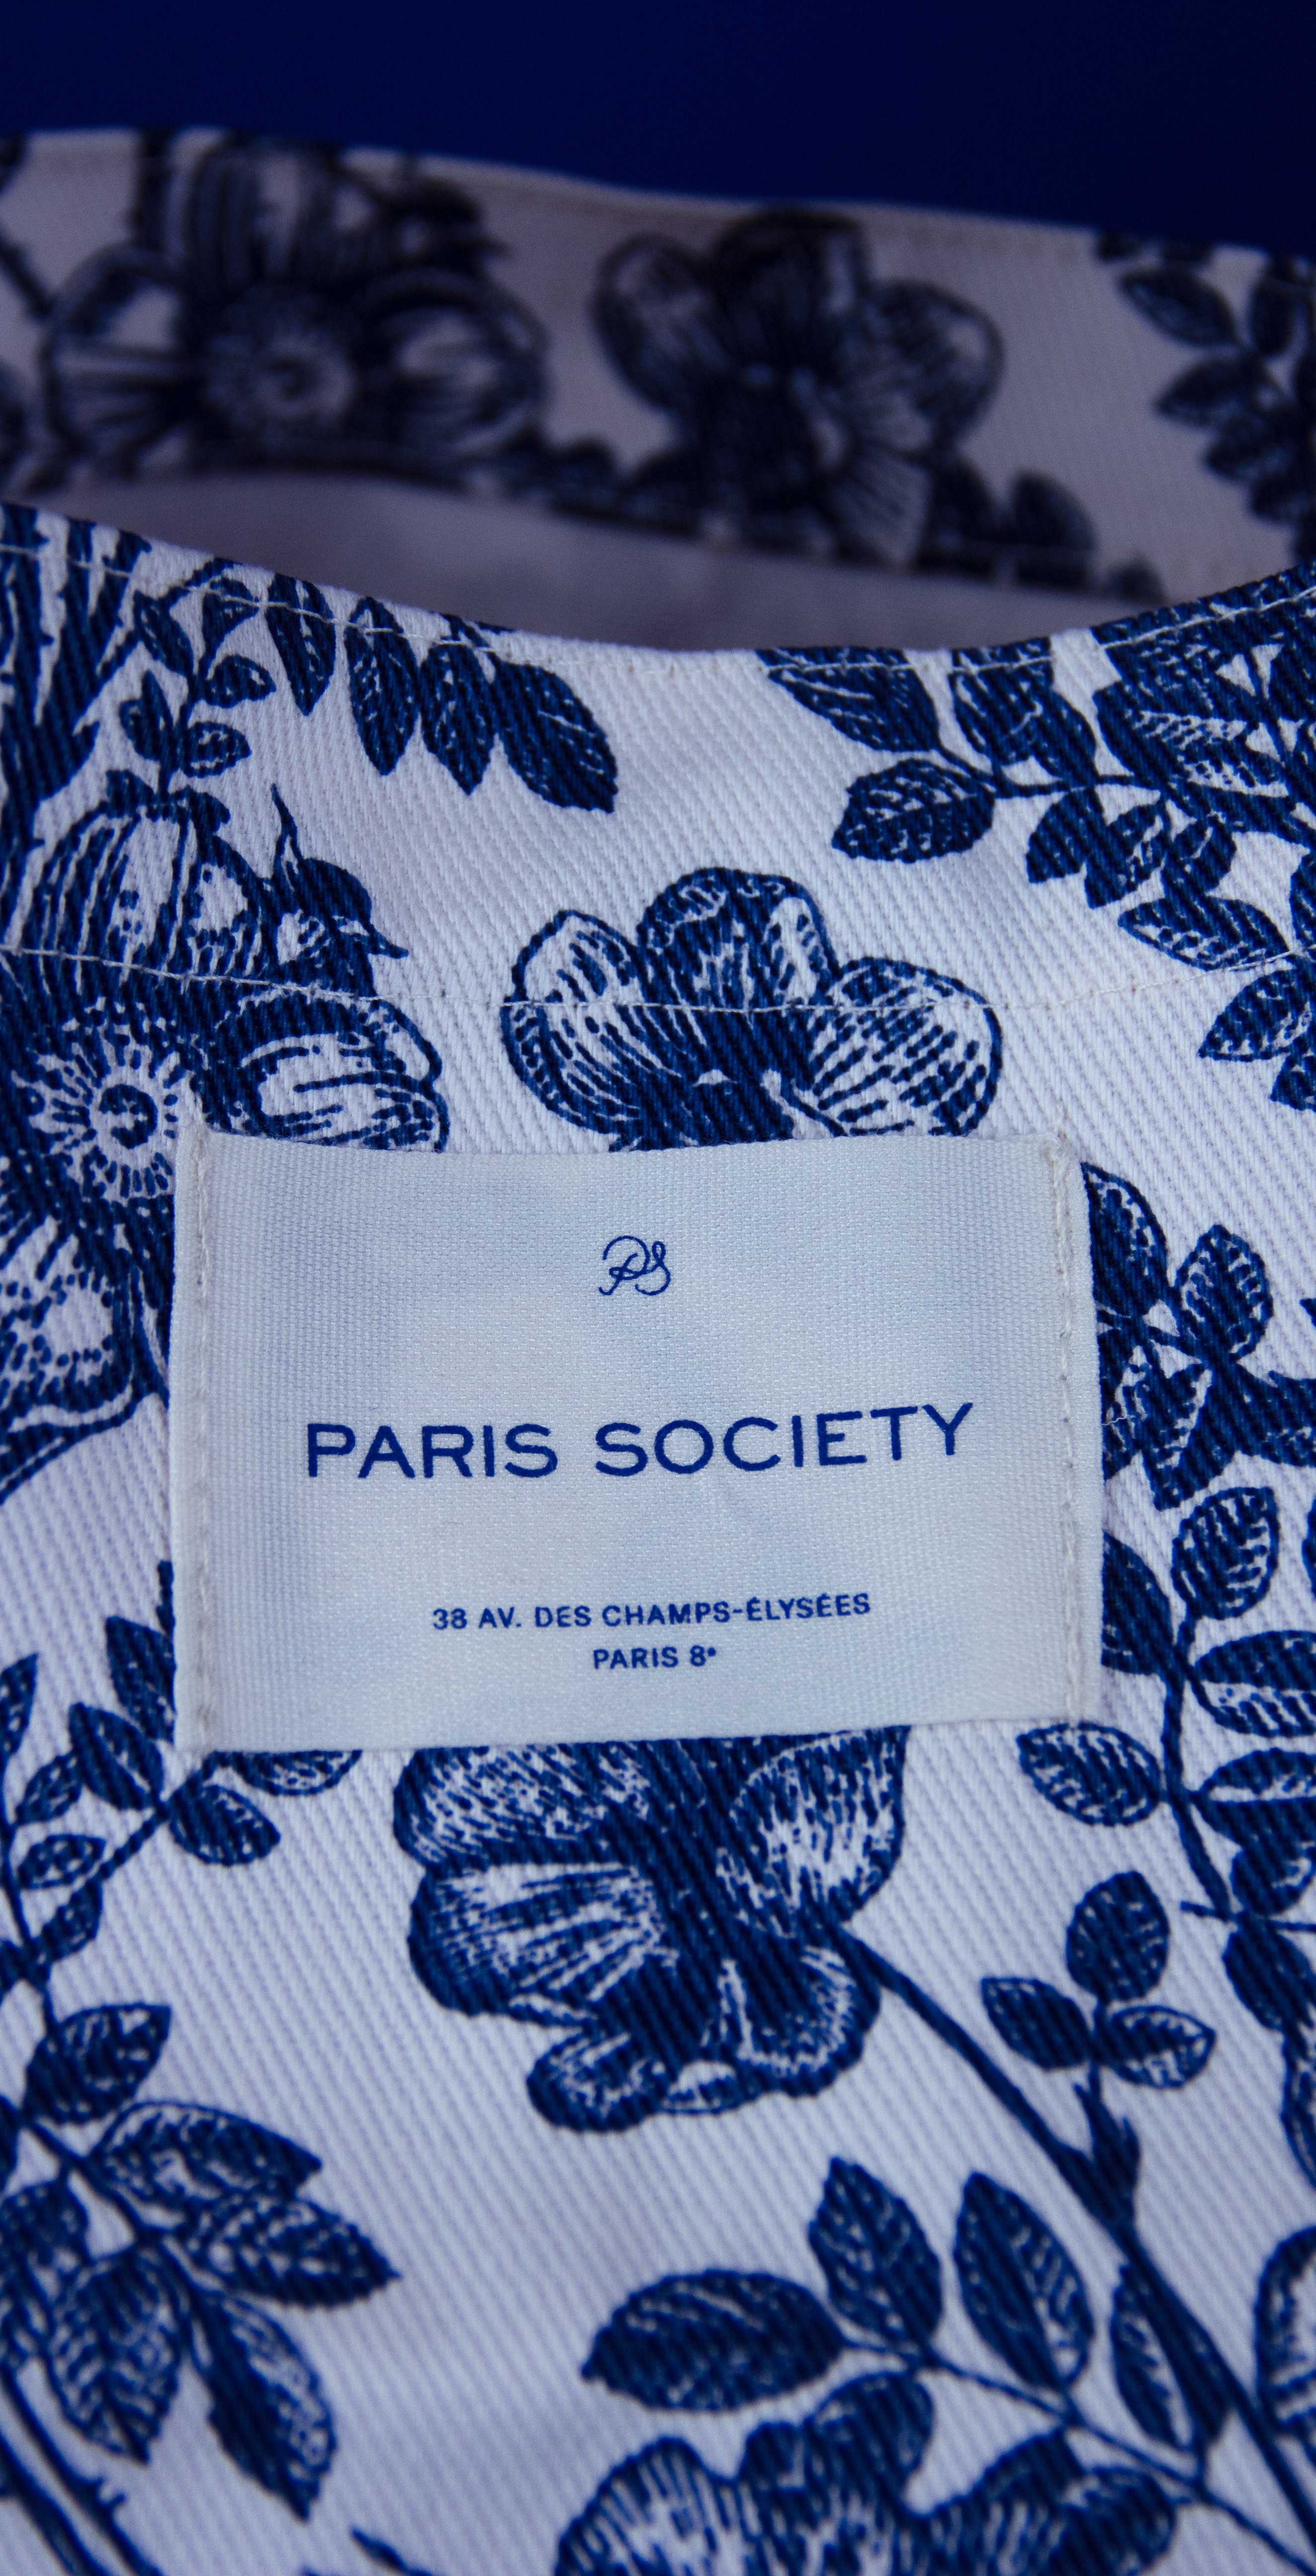 Tote bag garden party de Paris Society avec finition couture et griffe personnalisée.